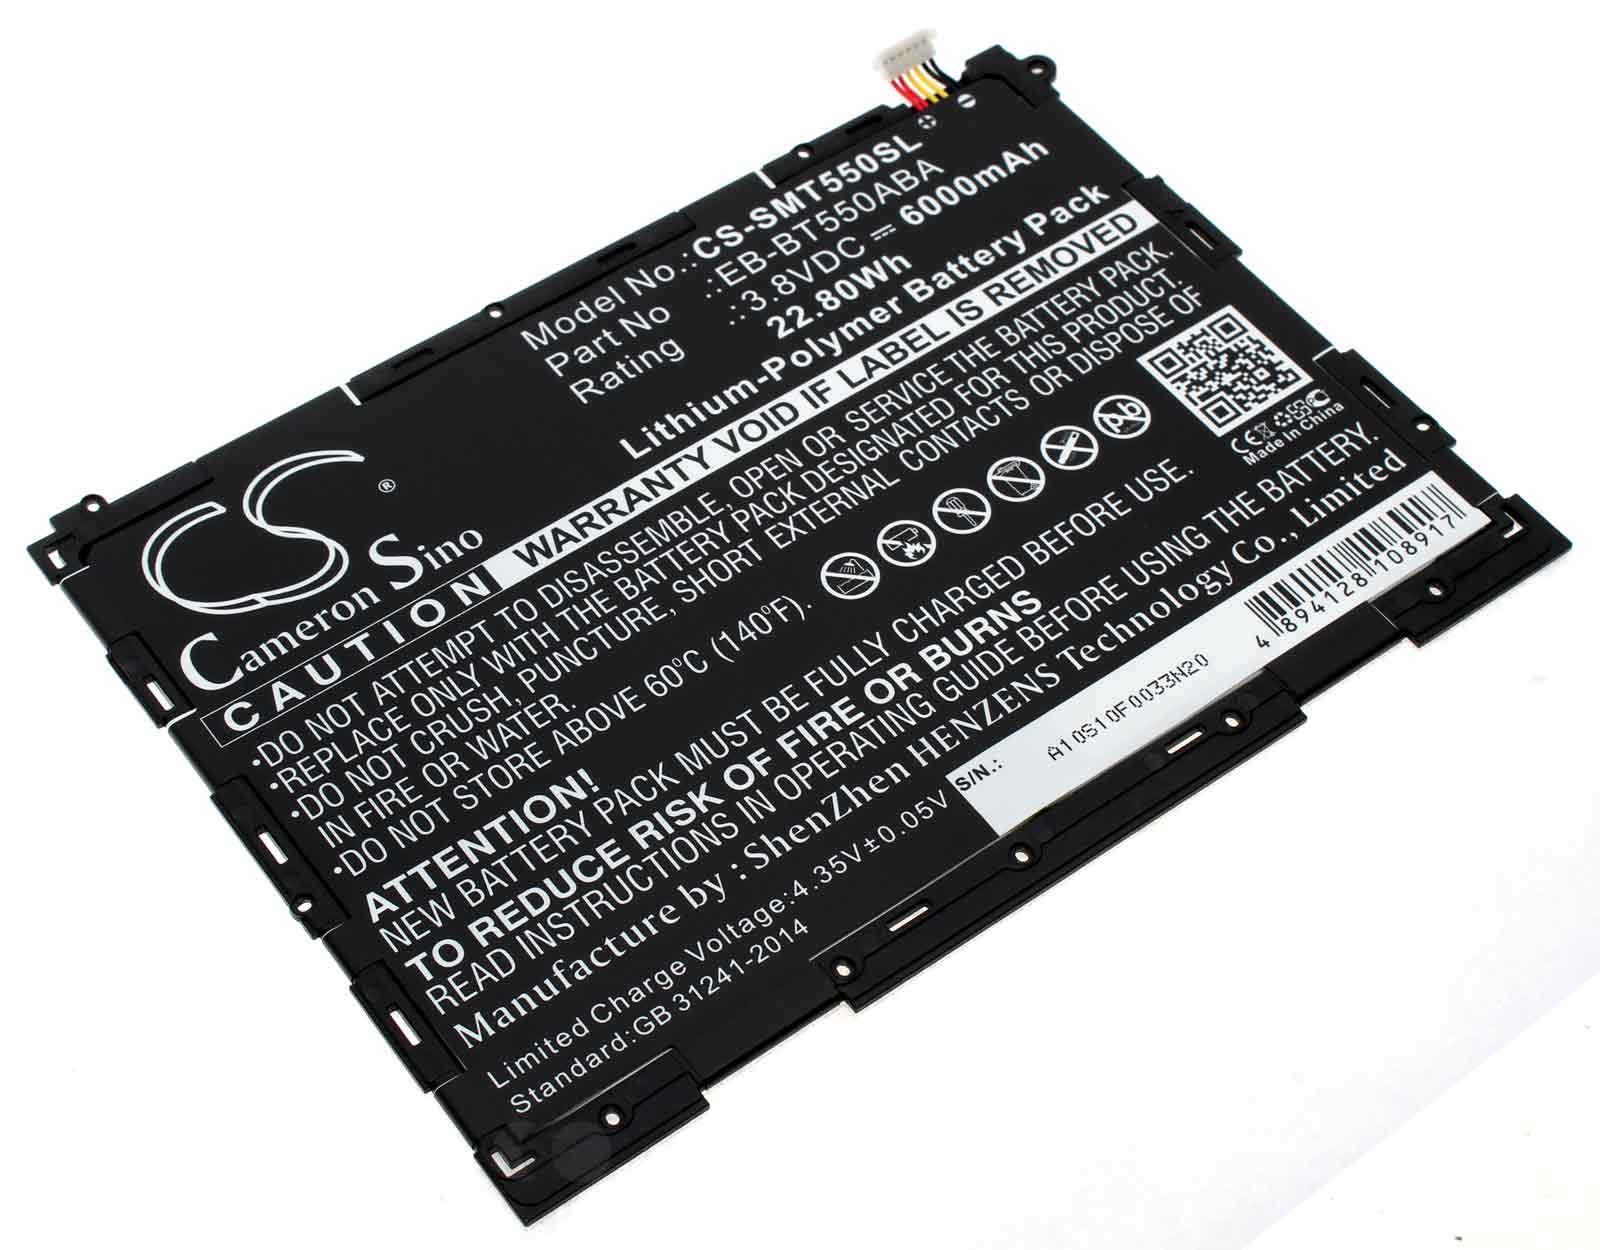 Alternativer Lithium-Polymer Akku für Samsung Galaxy Tab A 9.7 mit 3,8 Volt und 6000mAh Kapazität, ersetzt den original Akku EB-BT550ABA und EB-BT550ABE